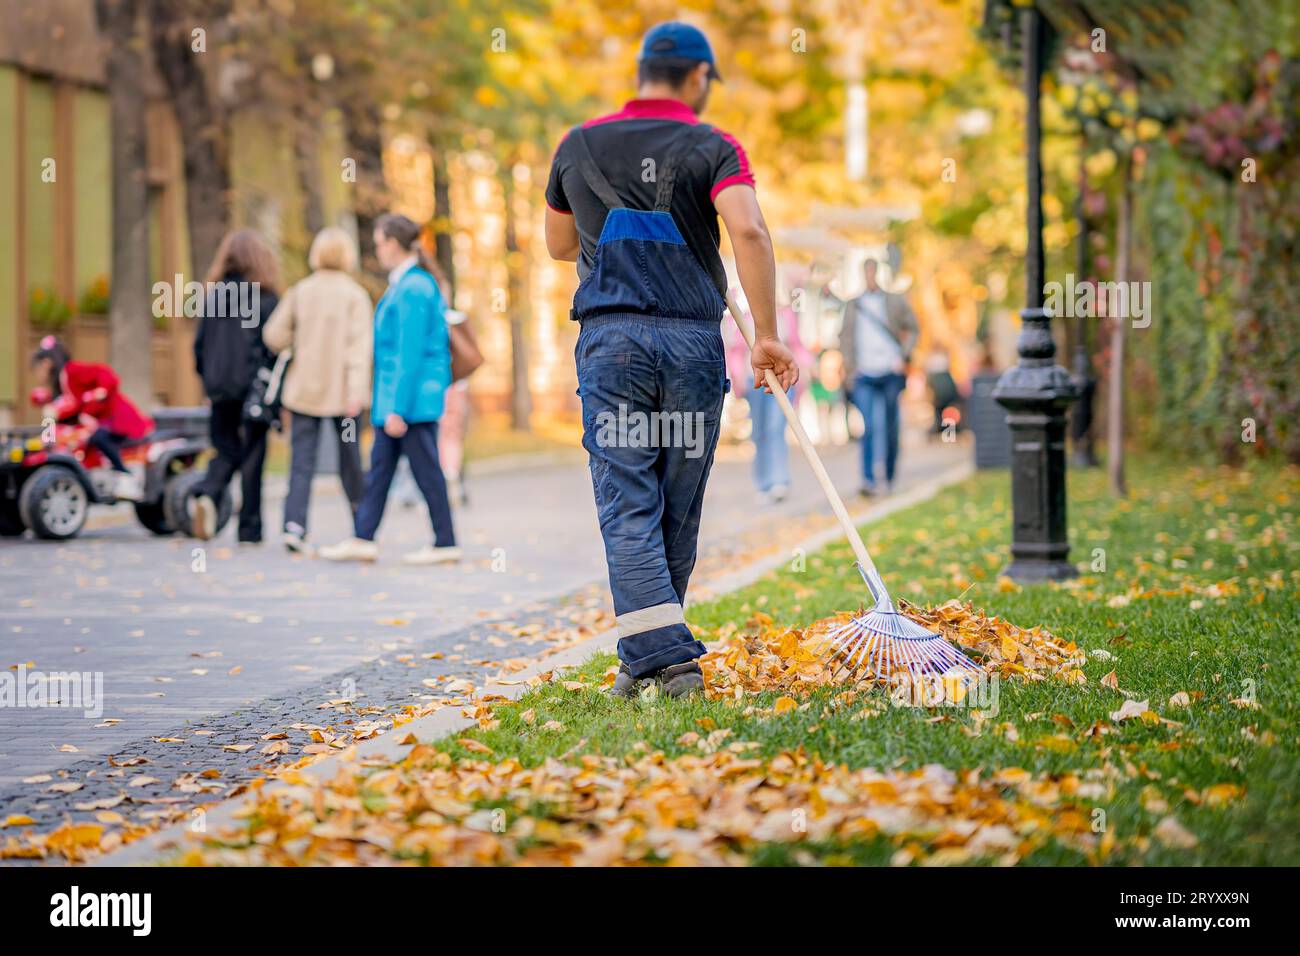 Rückansicht eines Mannes, der trockenes Laub harkt, gefallenes Laub im Stadtpark reinigt. Herbst, Laubfall Stockfoto